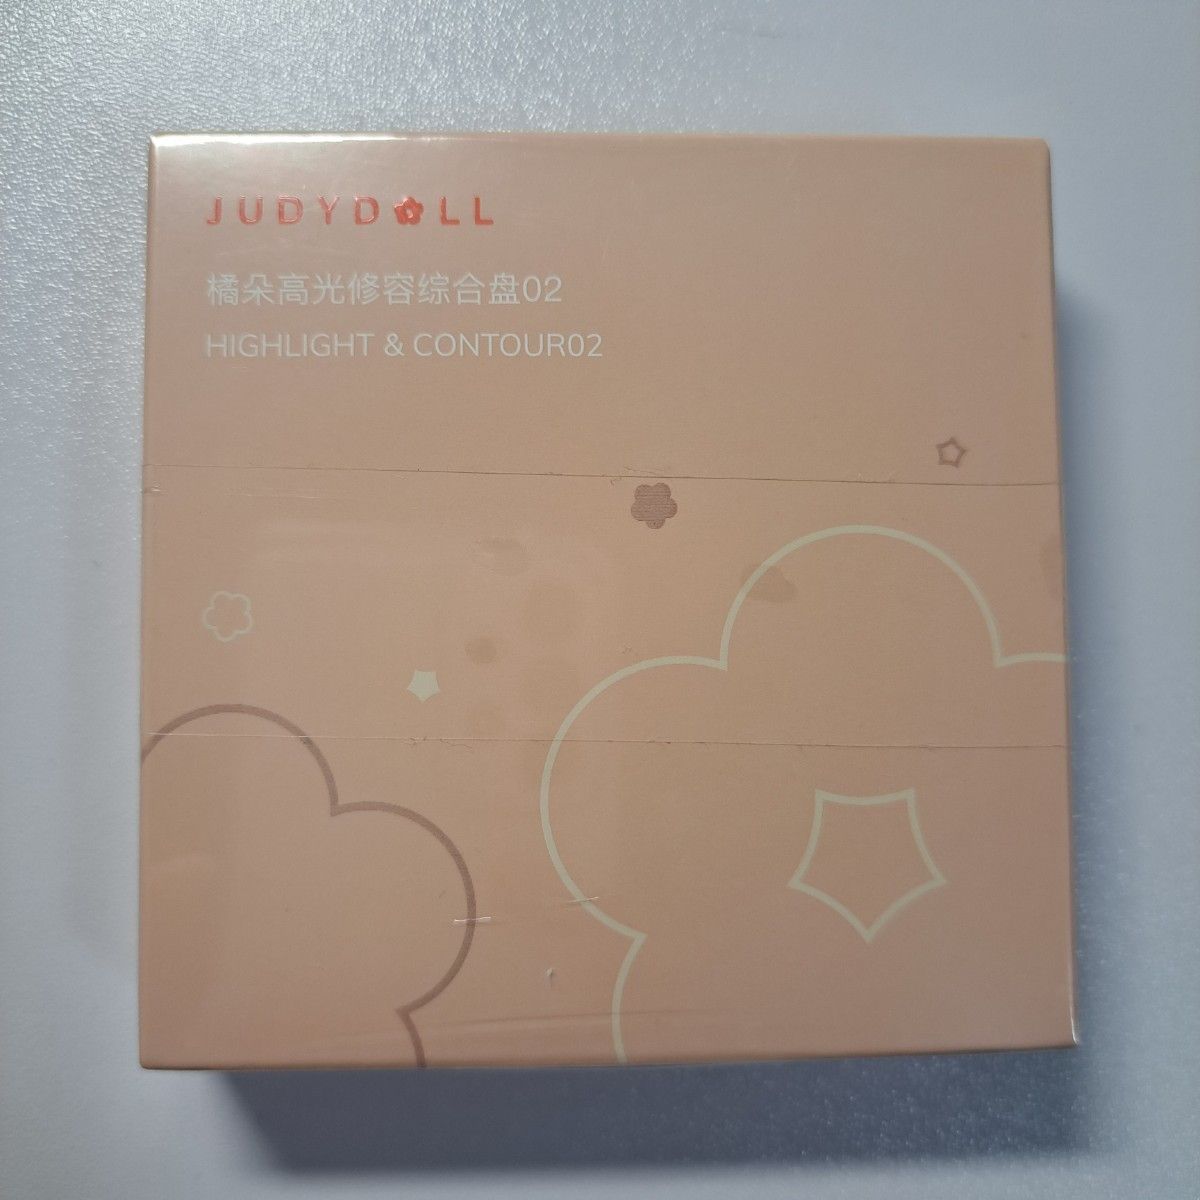 【新品未開封】JUDYDOLL 正規品 メリハリマスターパレット 02 ウォームトーン シェーディング マットハイライト